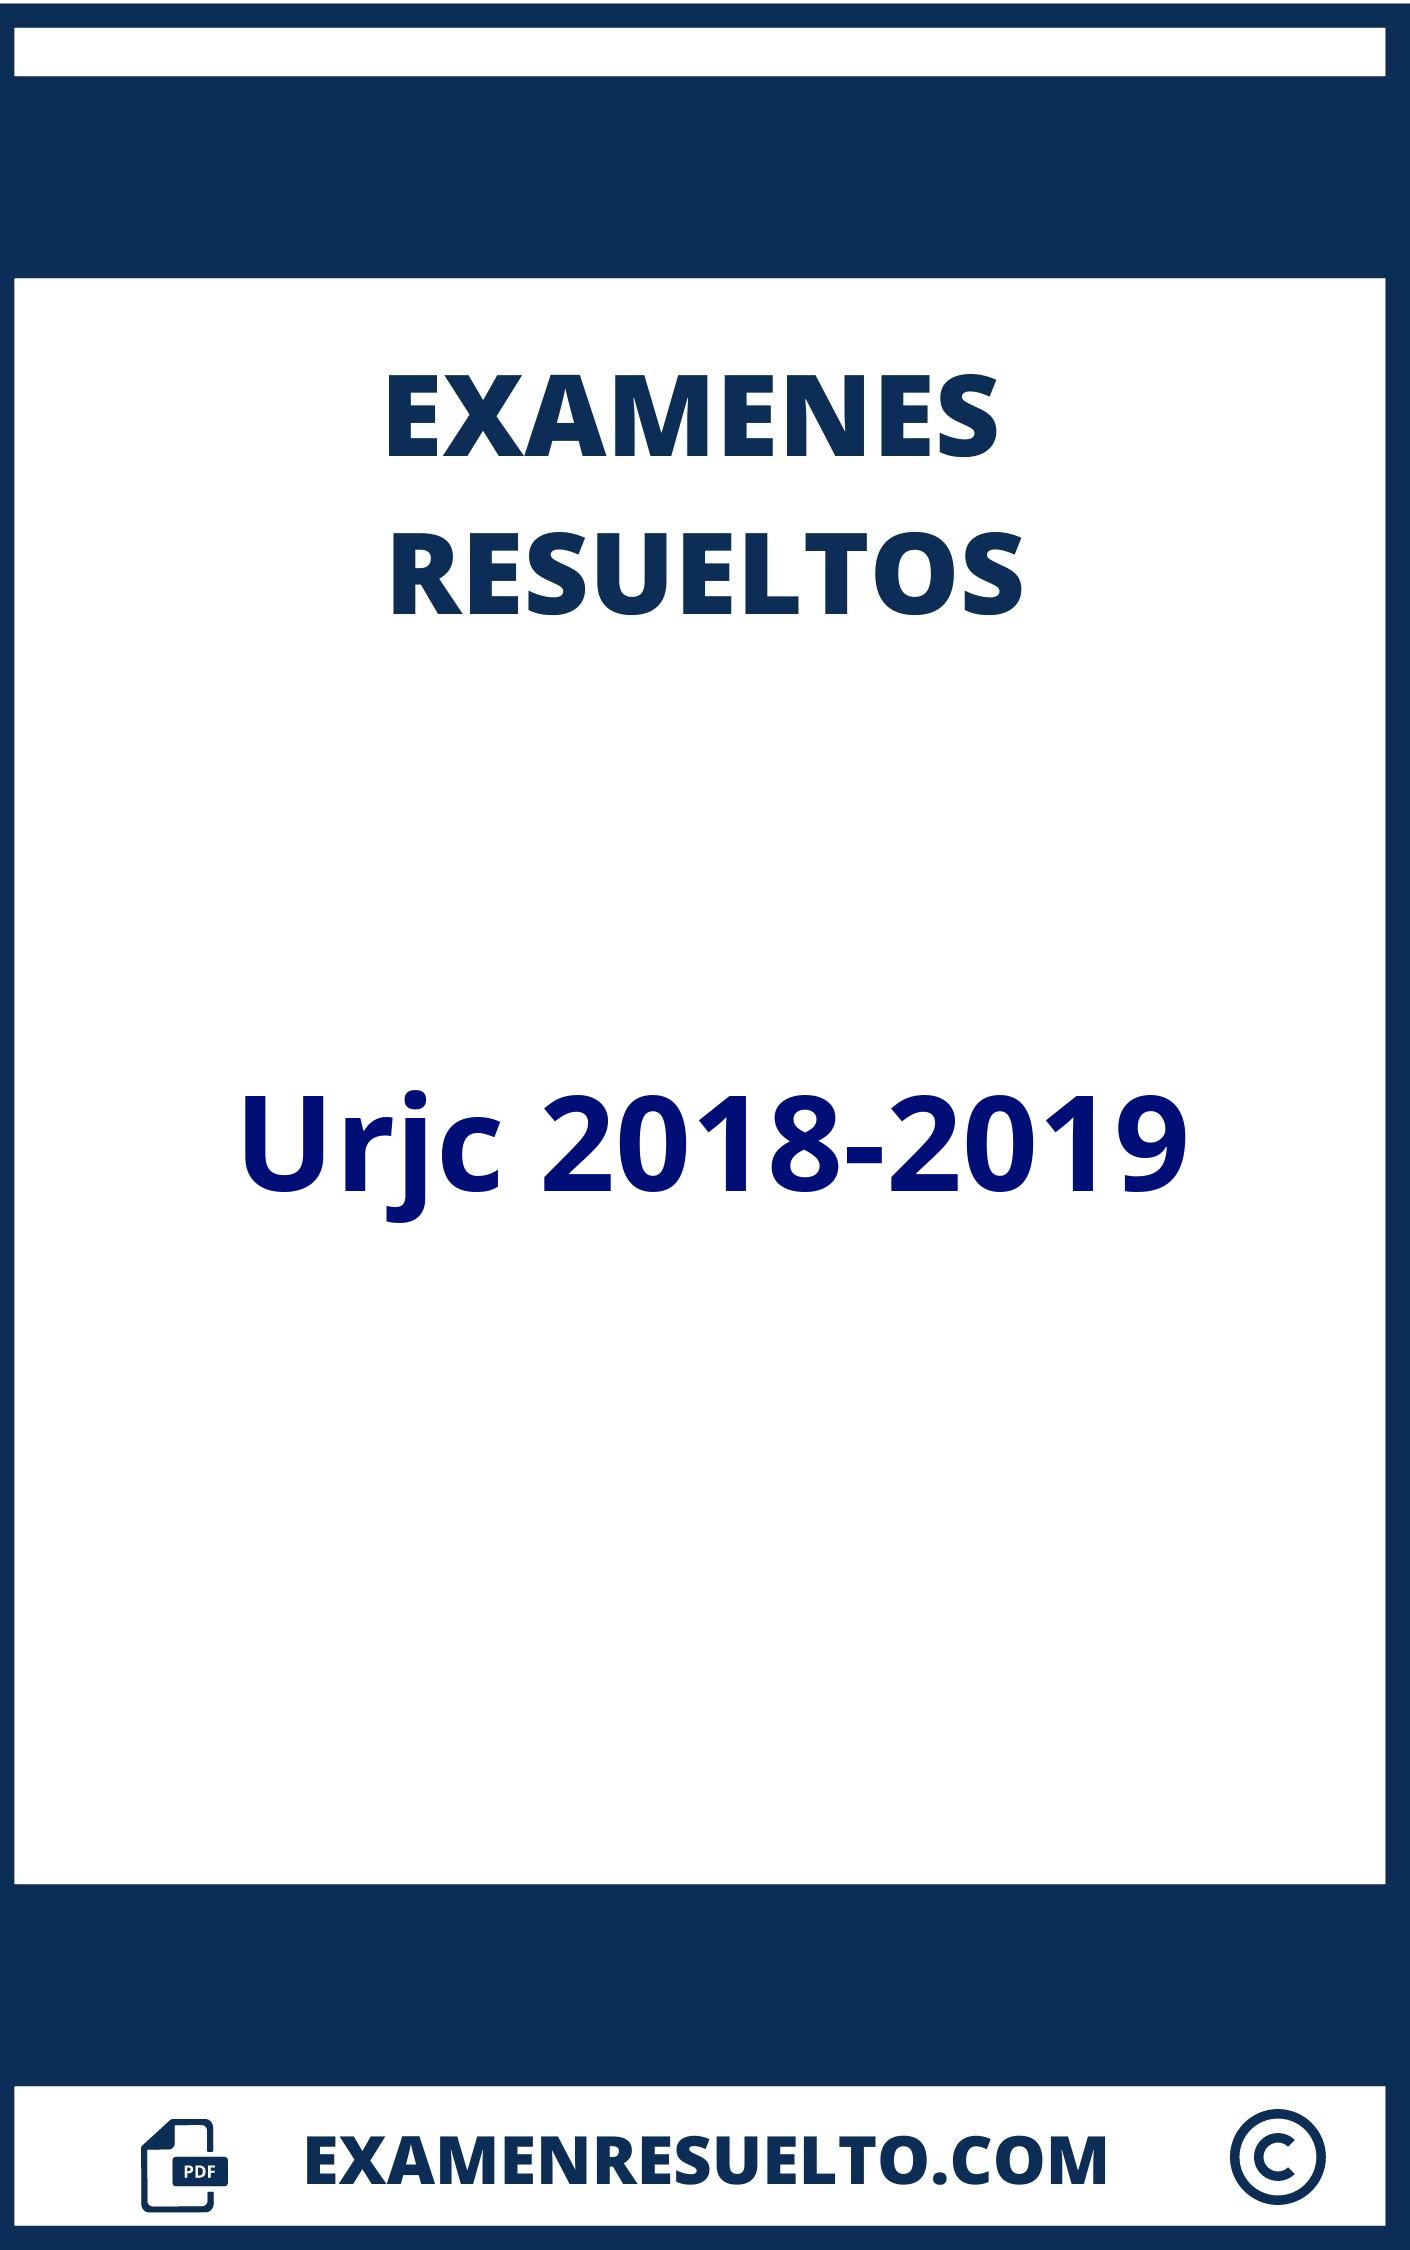 Examenes Urjc 2018-2019 Resueltos